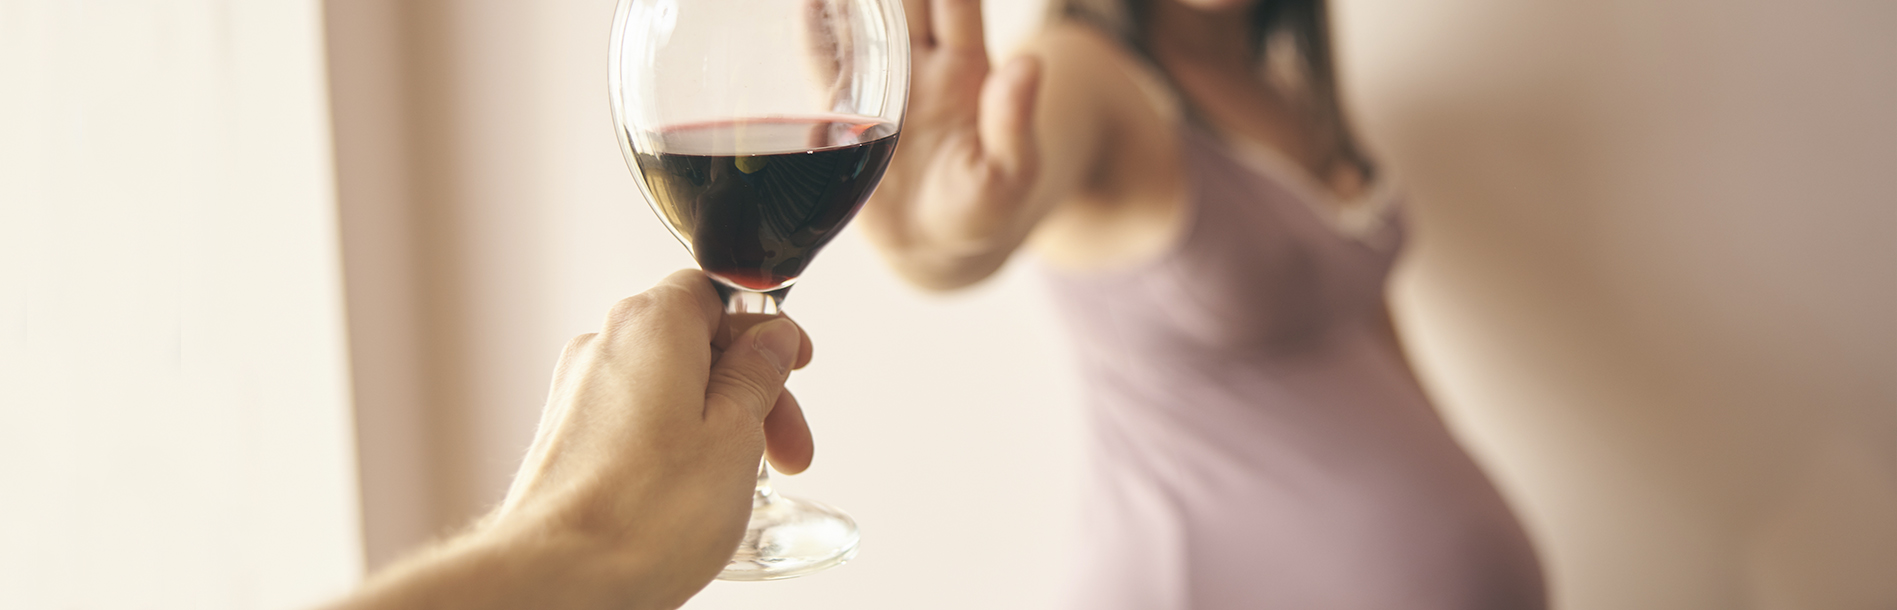 Grávida e bebida alcoólica: por que essa combinação não pode acontecer?